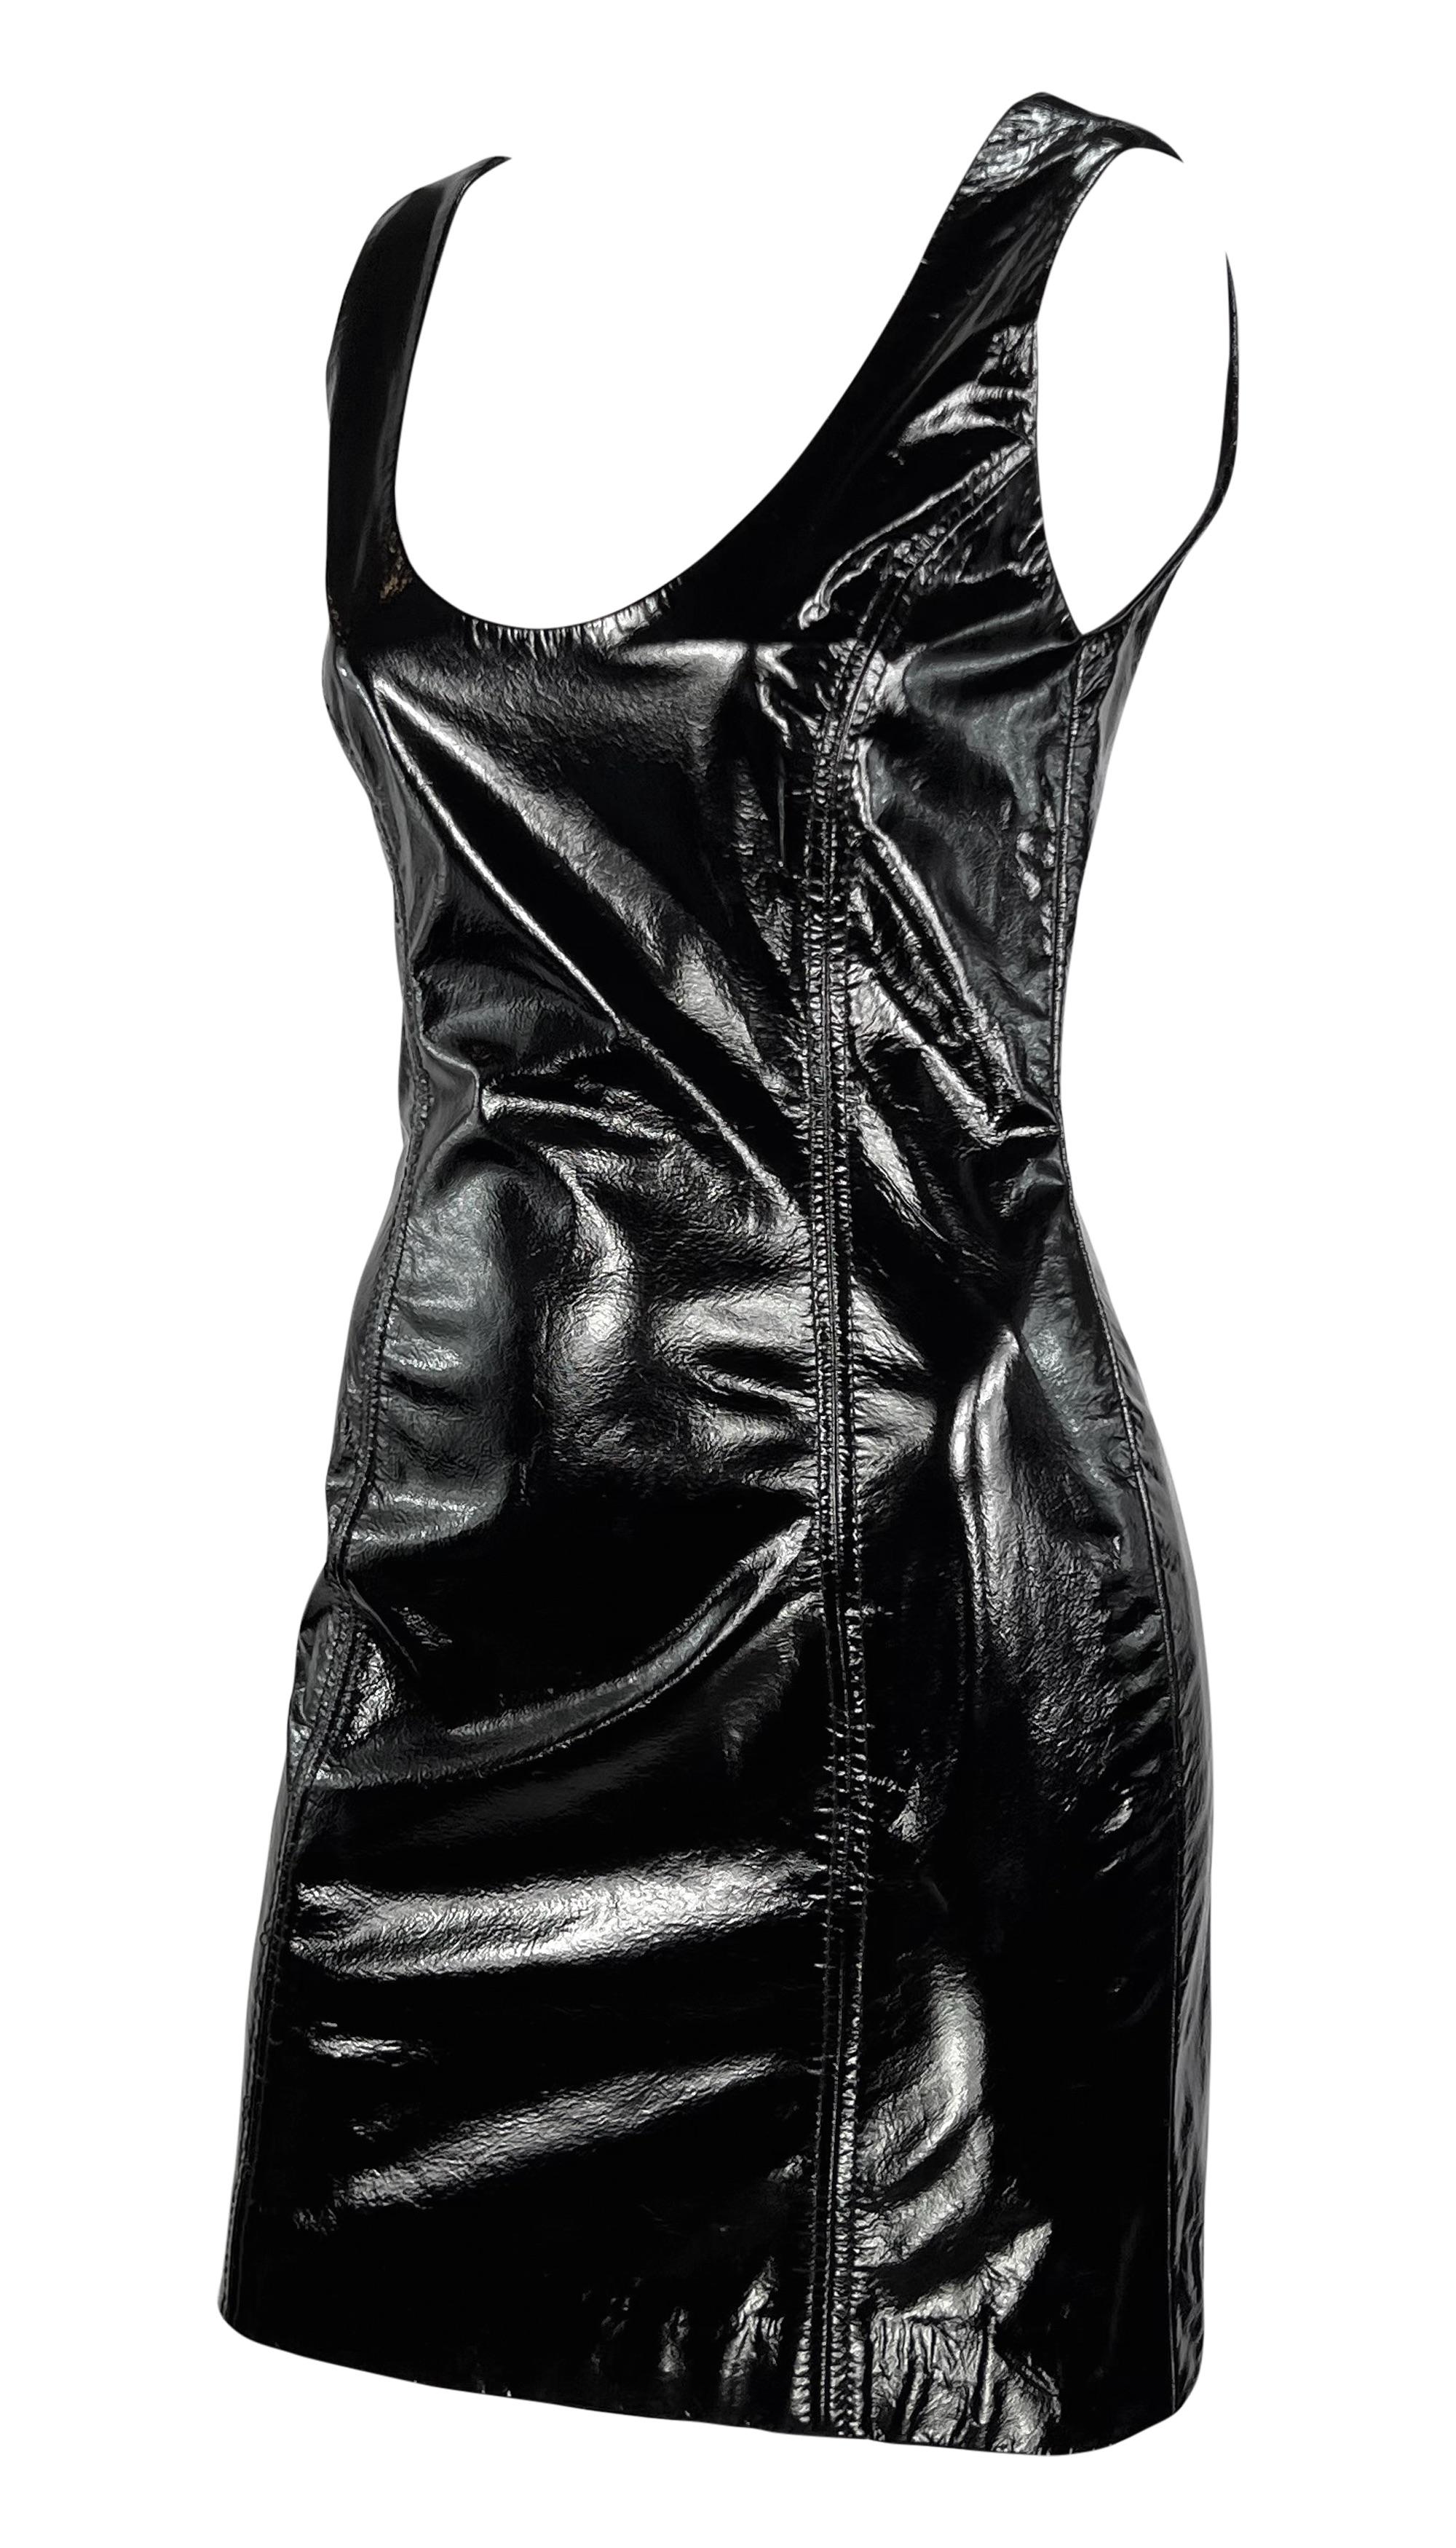 Dieses schwarze Galanos-Minikleid aus Lackleder aus den 1990er Jahren ist das perfekte sexy Abendkleid. Dieses taillierte Minikleid aus schwarzem Lackleder verfügt über breite Schulterträger und einen Halsausschnitt mit Schlitz. 

Ungefähre